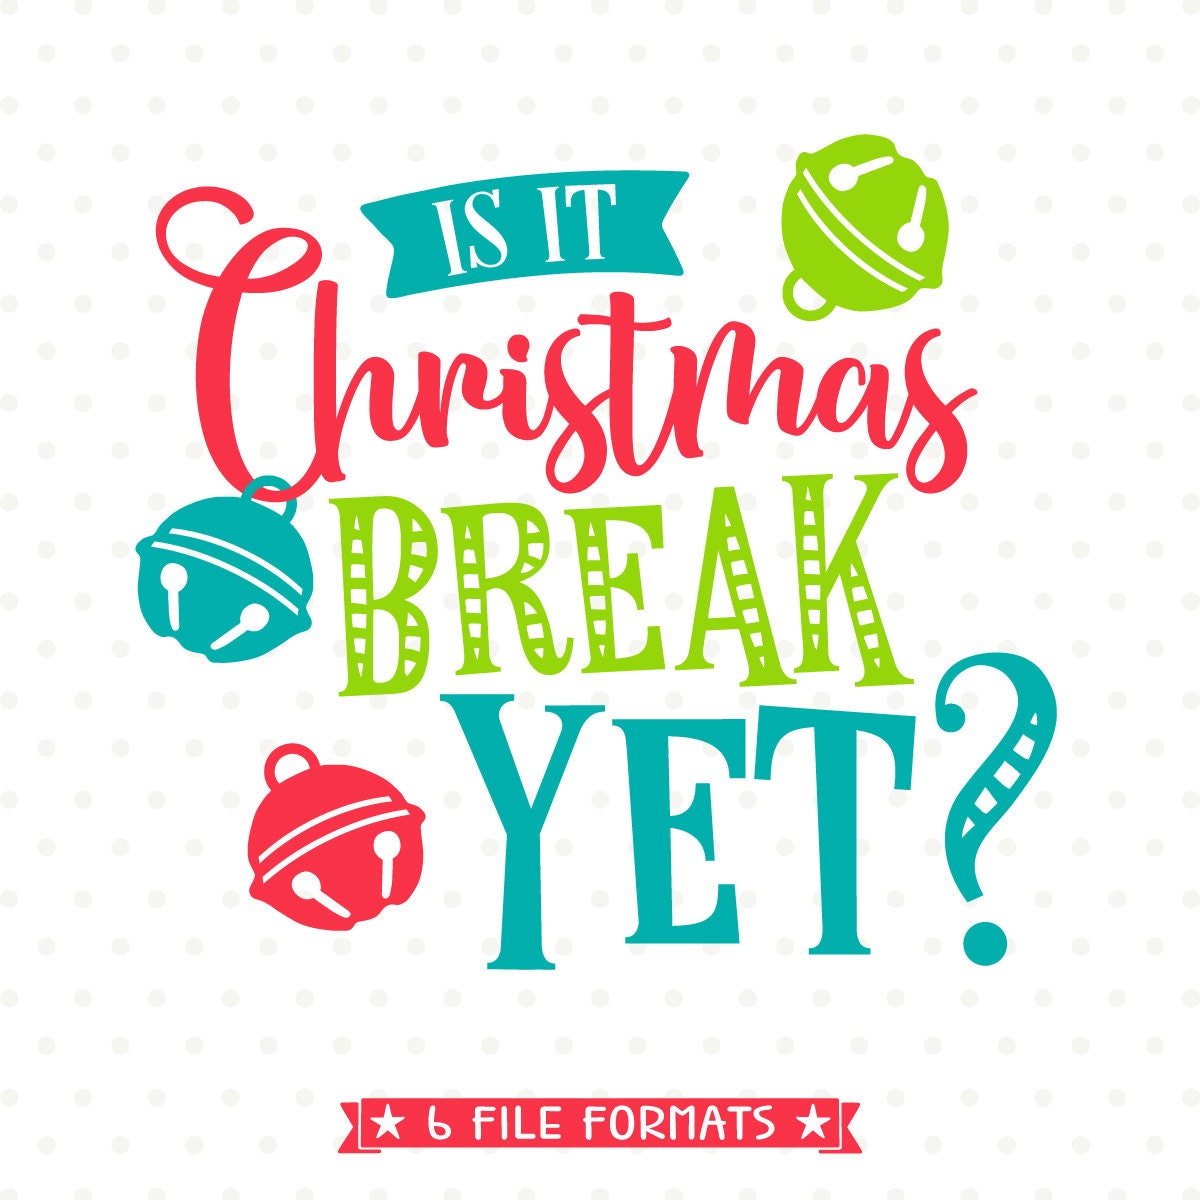 Christmas SVG for Teachers Is it Christmas Break Yet SVG